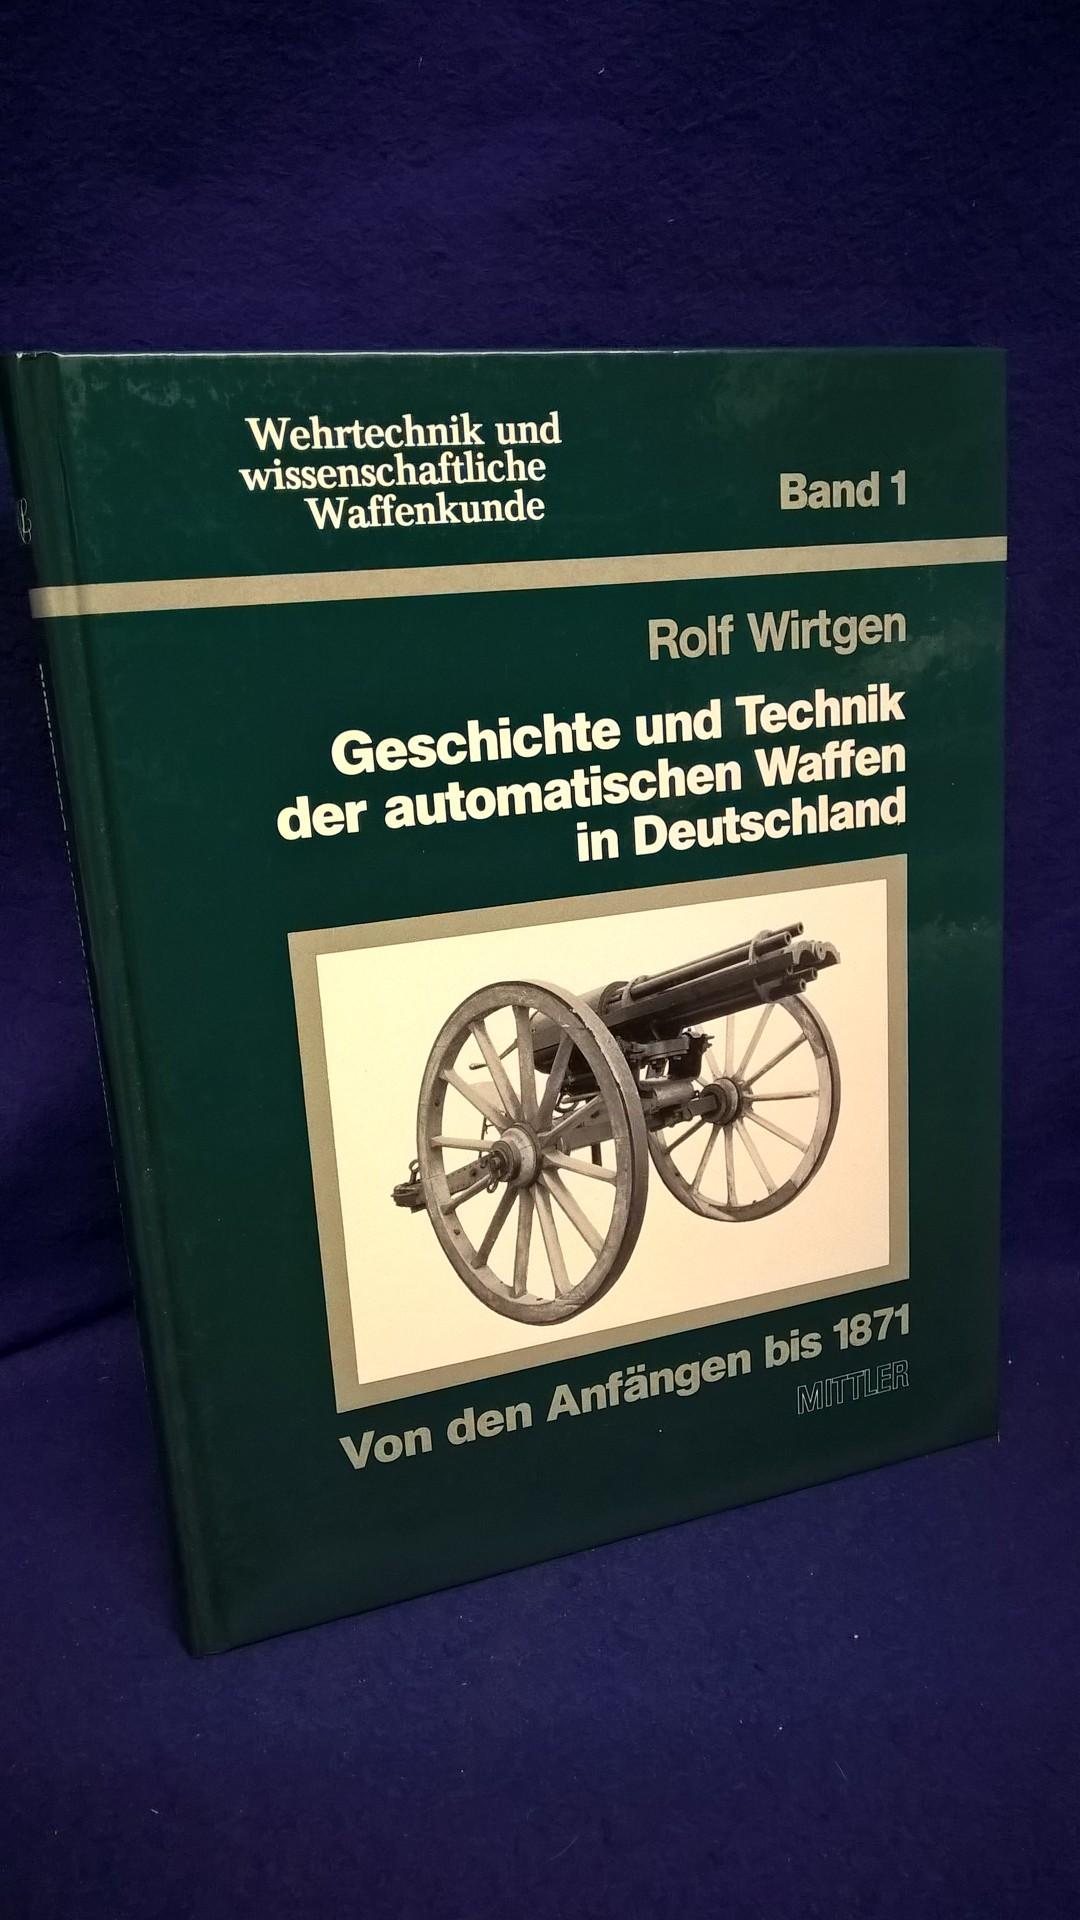 Wehrtechnik und wissenschaftliche Waffenkunde Band 1. Geschichte und Technik der automatischen Waffen in Deutschland. 